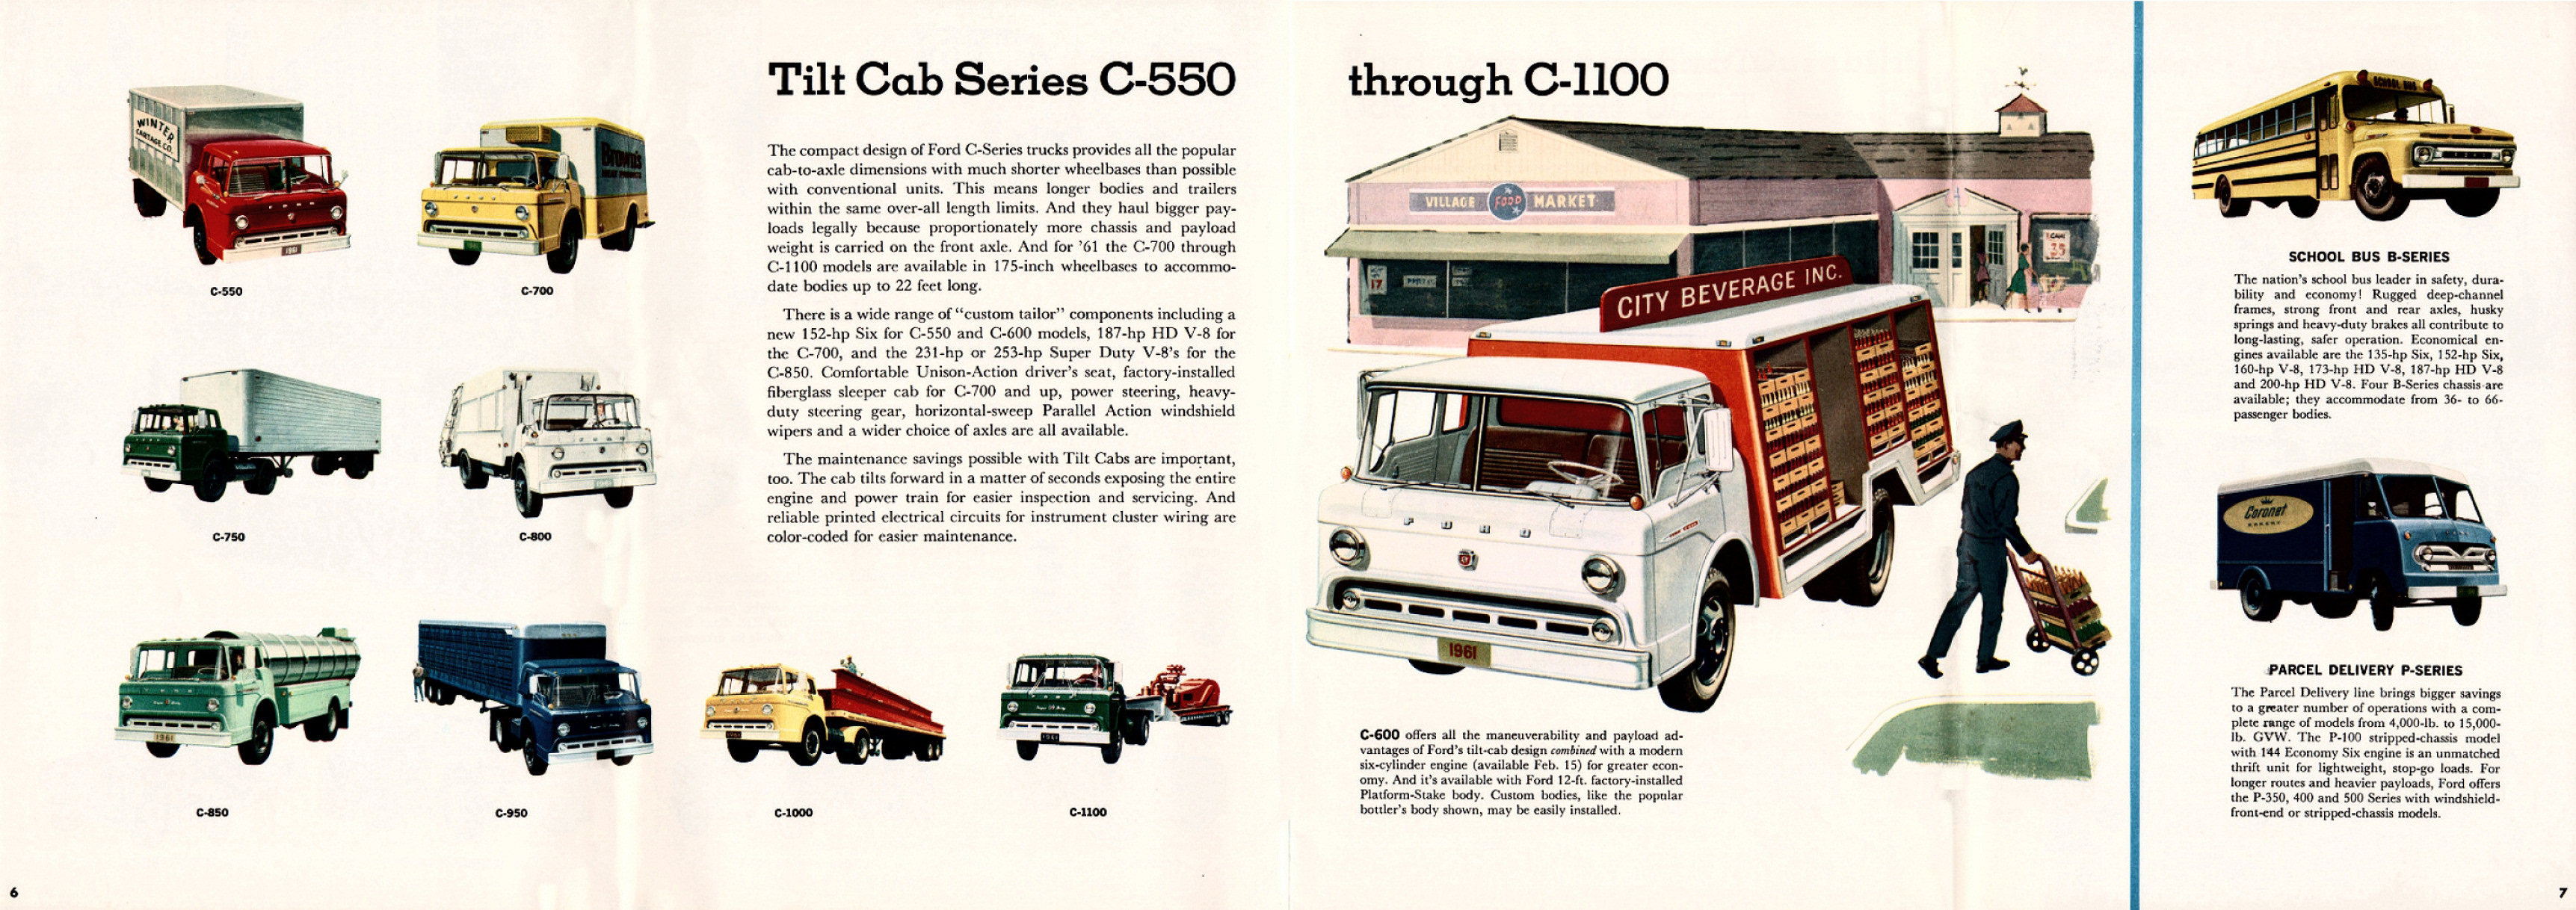 1961_Ford_Truck_Full_Line-06-07